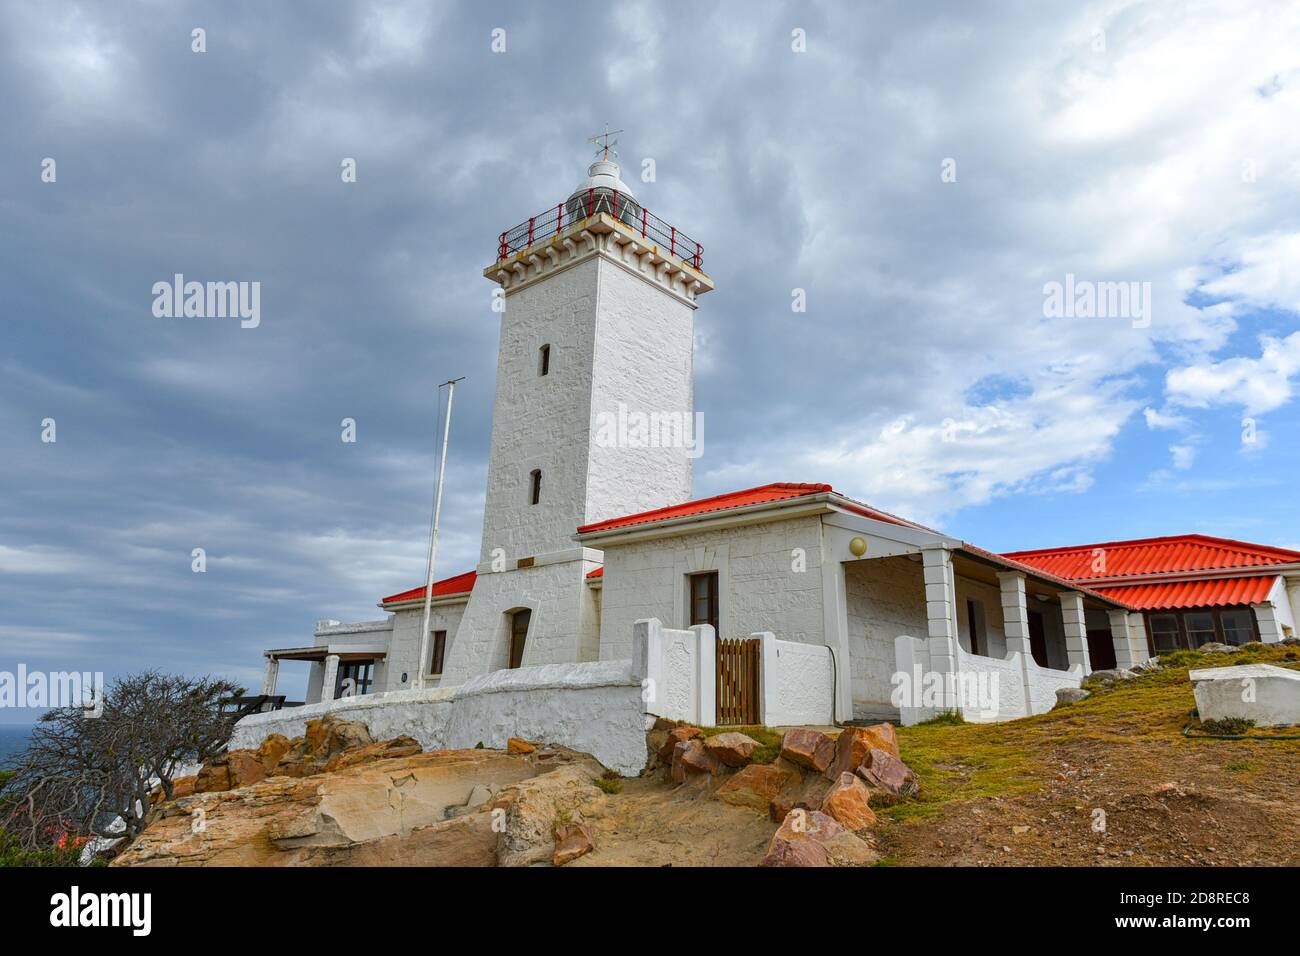 Cape St Blaize Lighthouse in Mossel Bay, Garden Route Africa ist ein großartiges Wahrzeichen auf der Garden Route, Südafrika Stockfoto